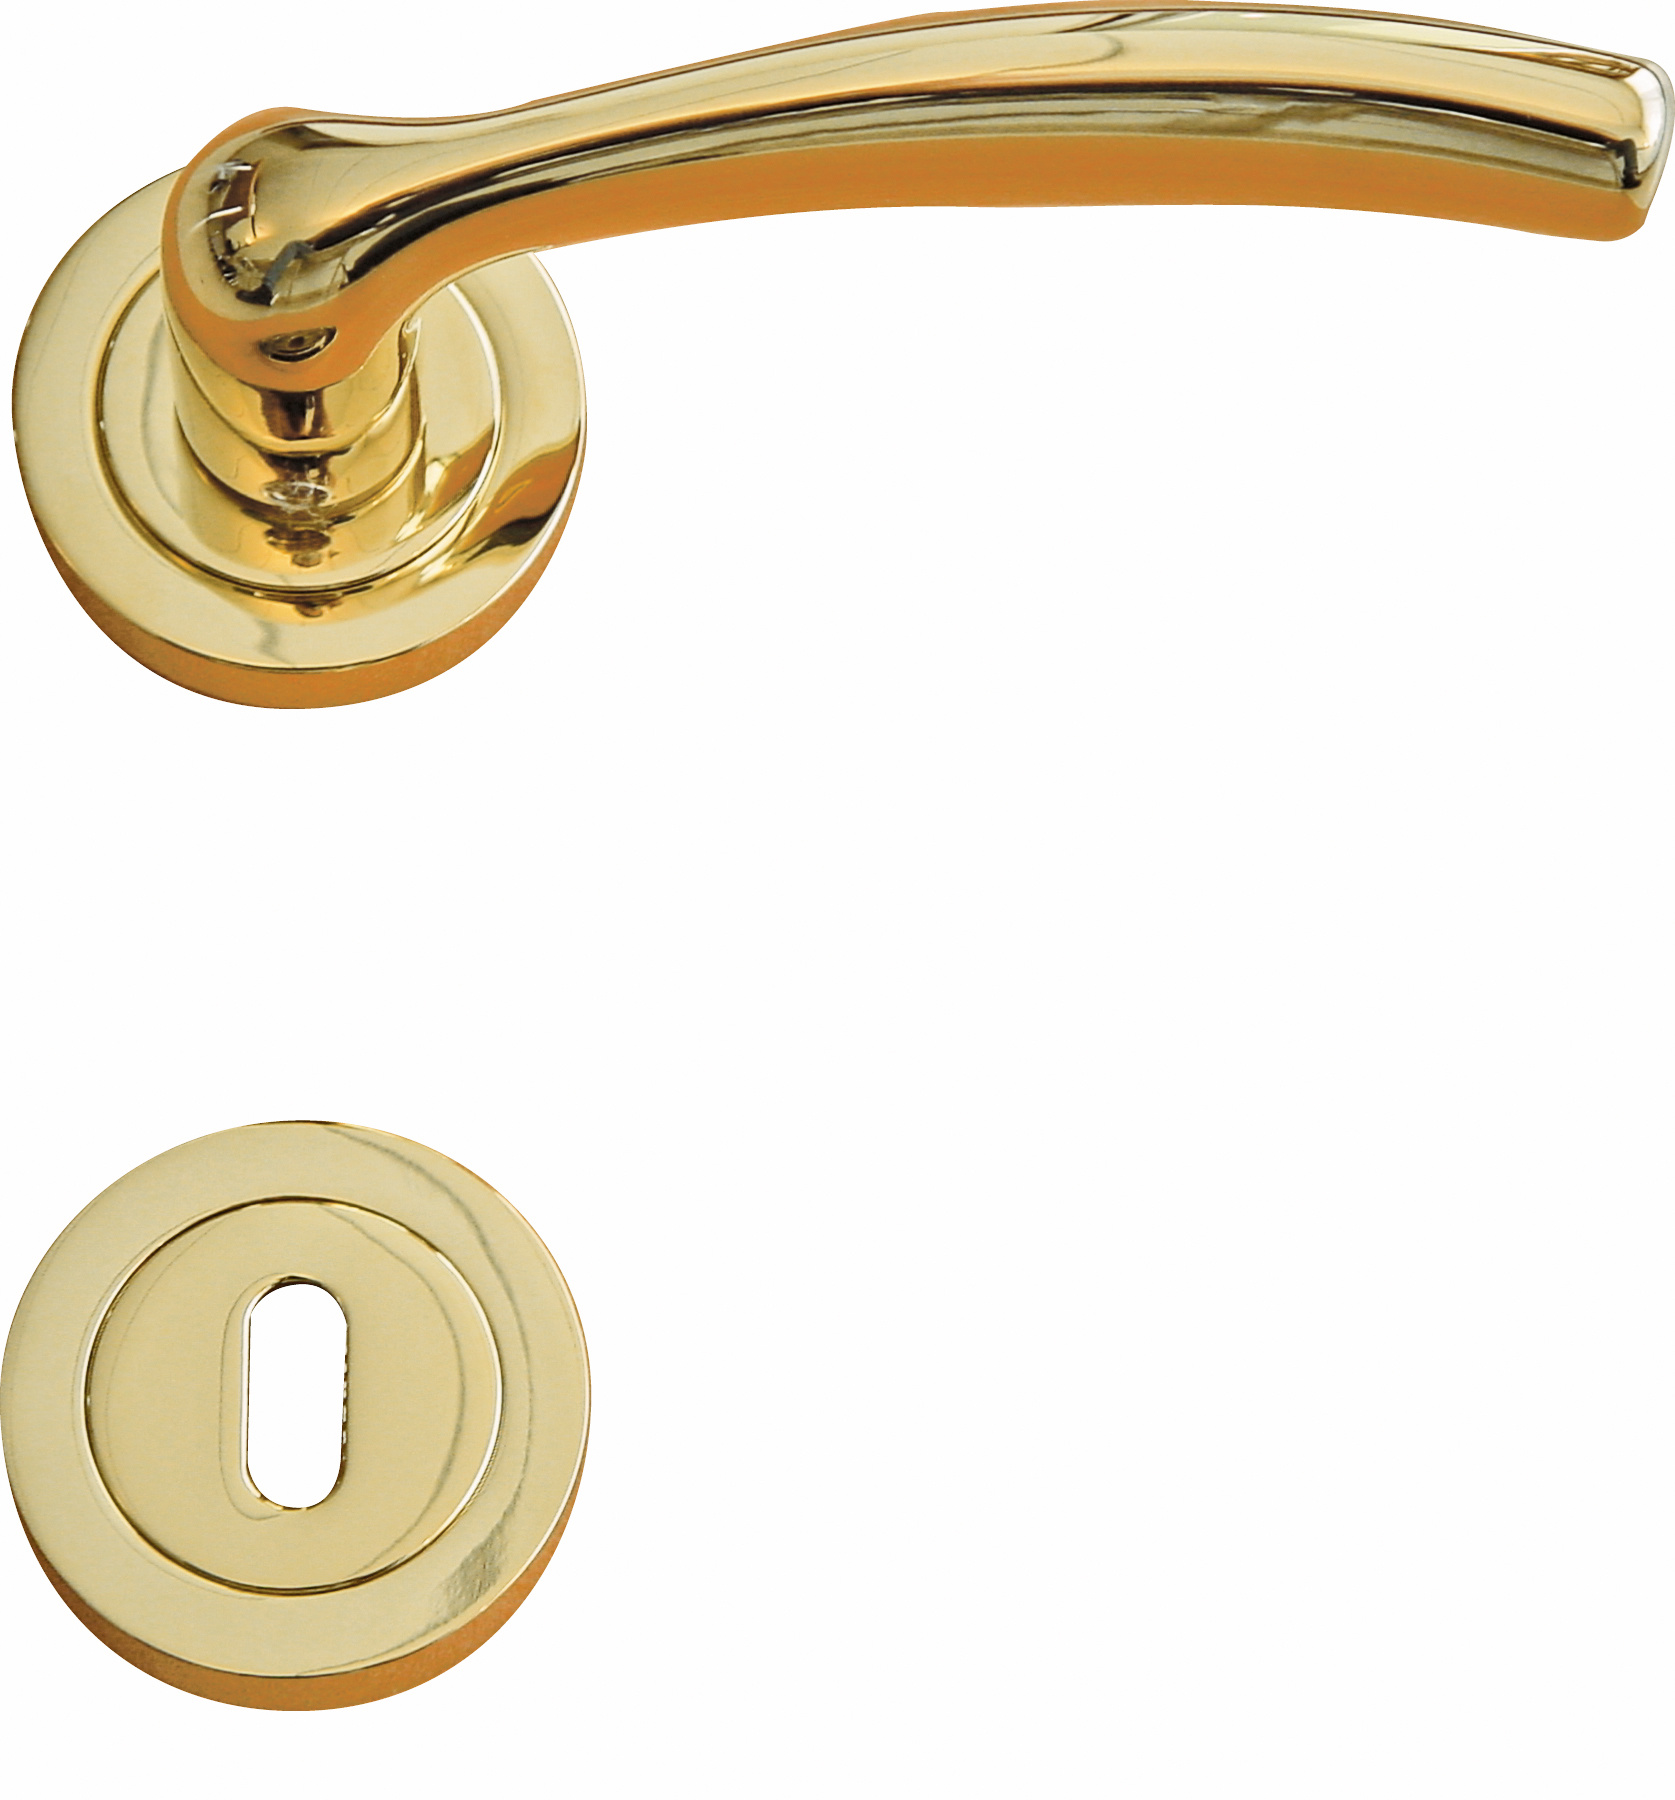 Copper door handles for a standard lock